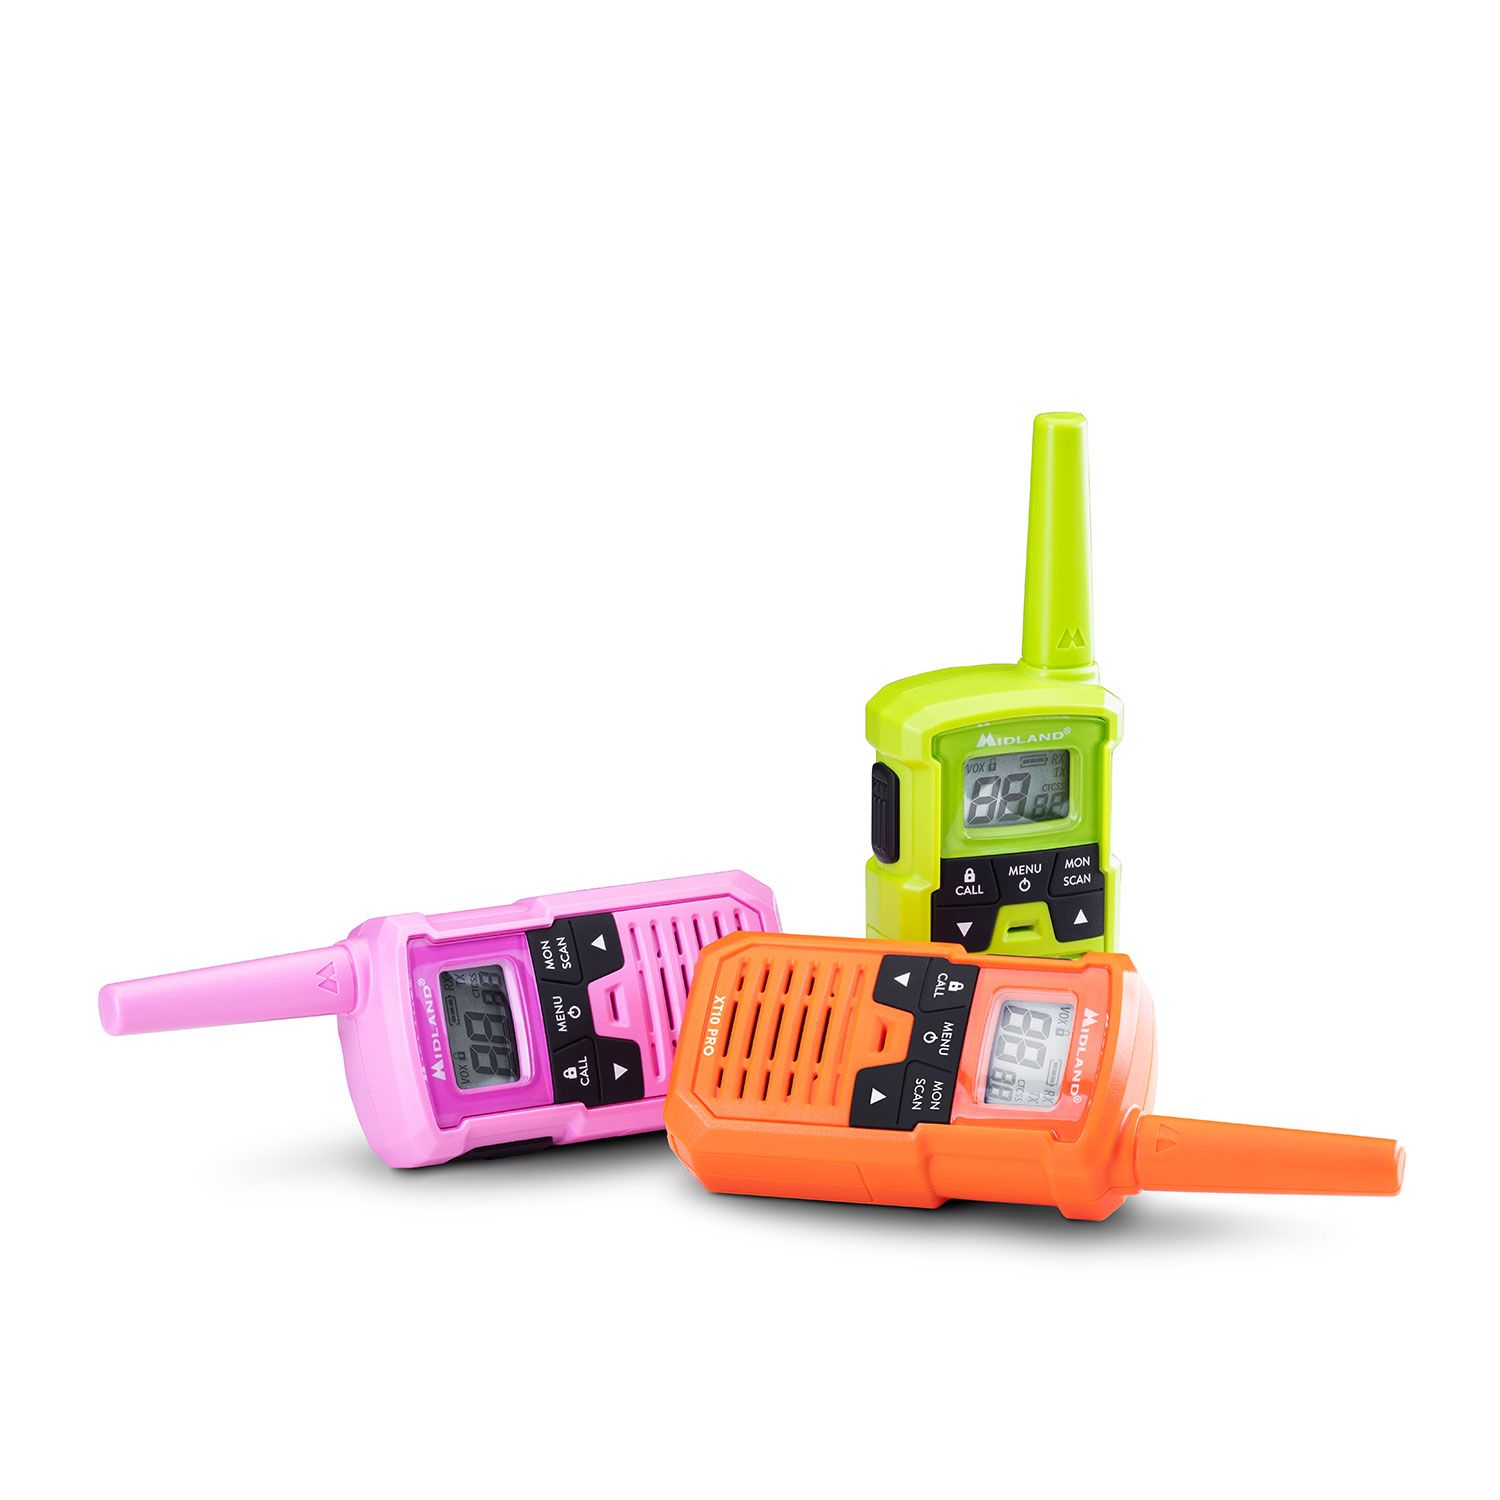 XT10 PRO Multicolor talkie walkie